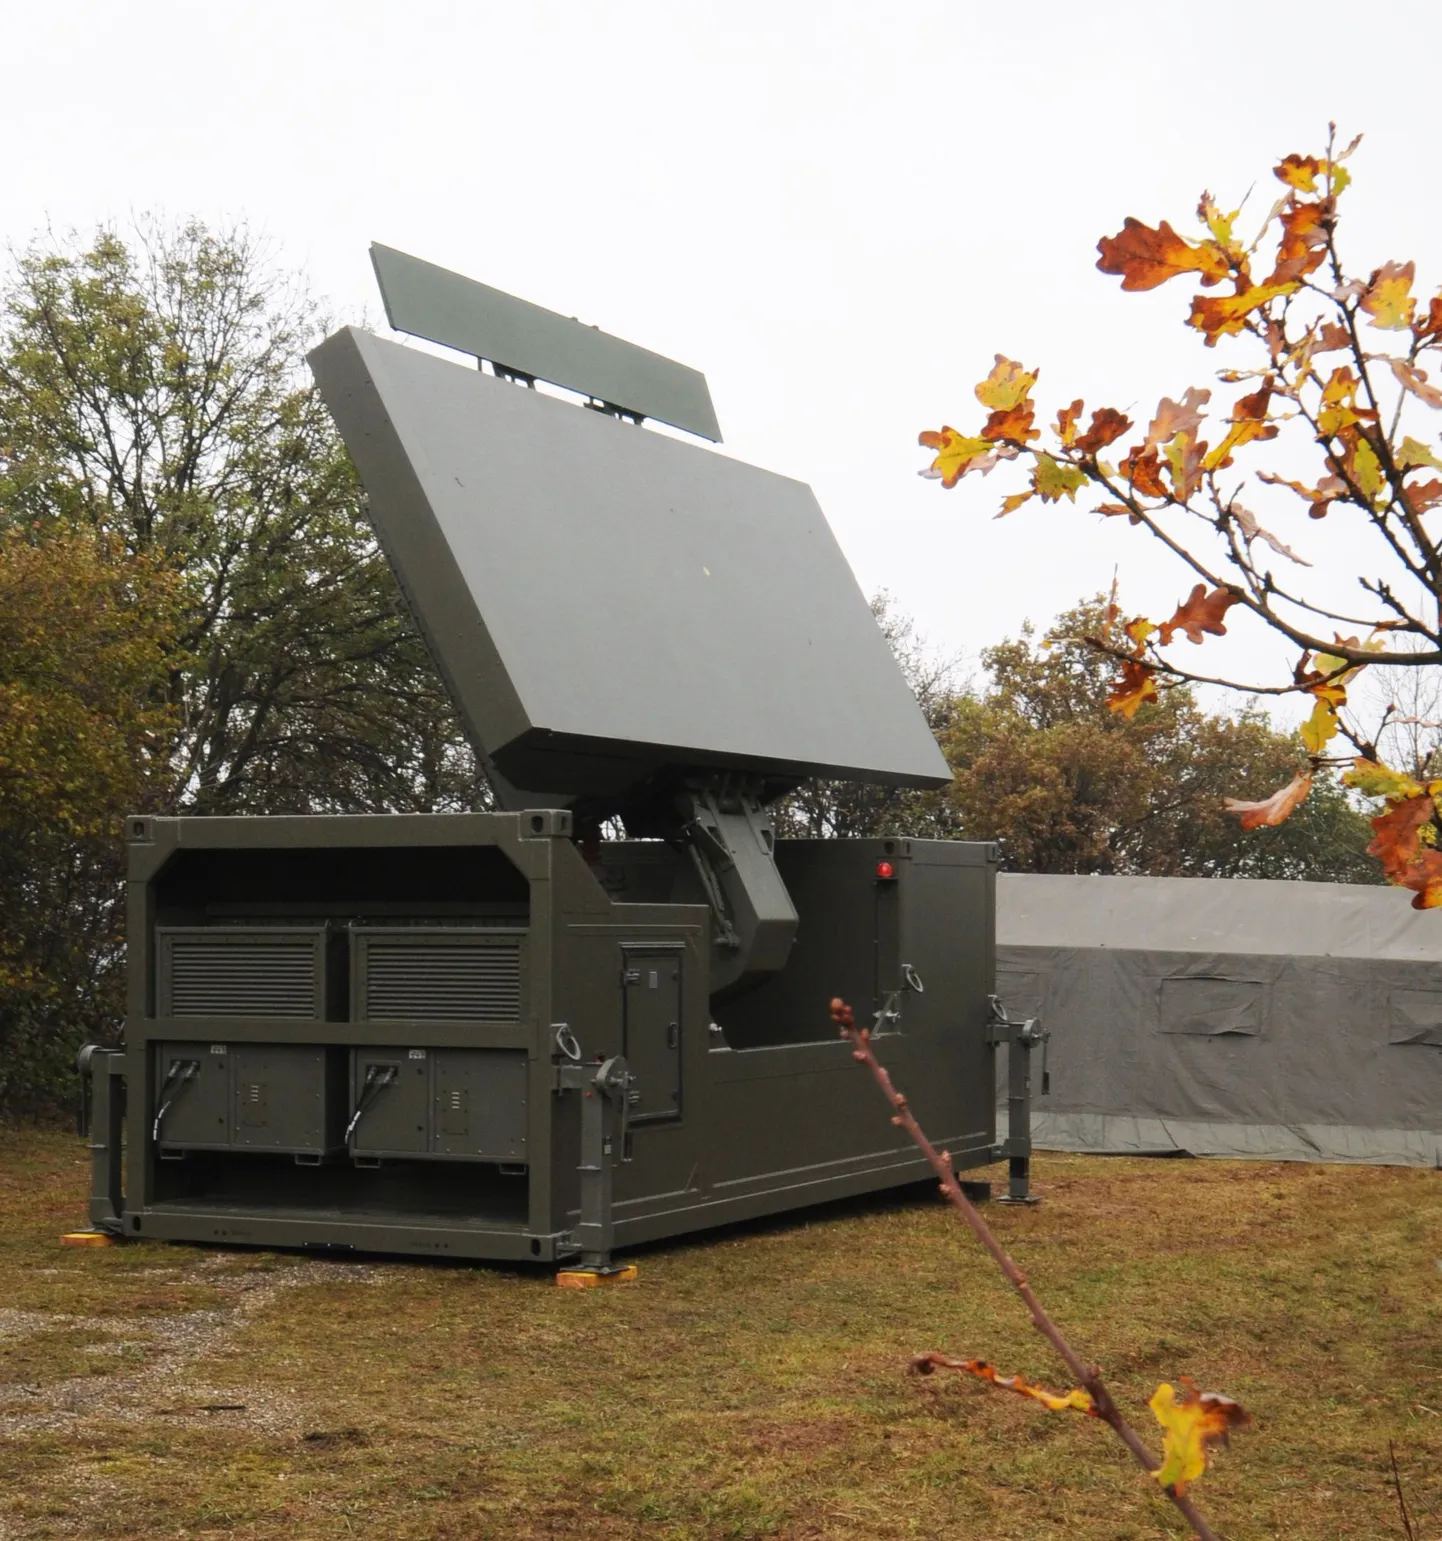 Selline näeb välja uus ja võimas Ground Master 400 radar. Foto on tehtud Prantsusmaal radarite valmistaja ThalesRaytheoni territooriumil.